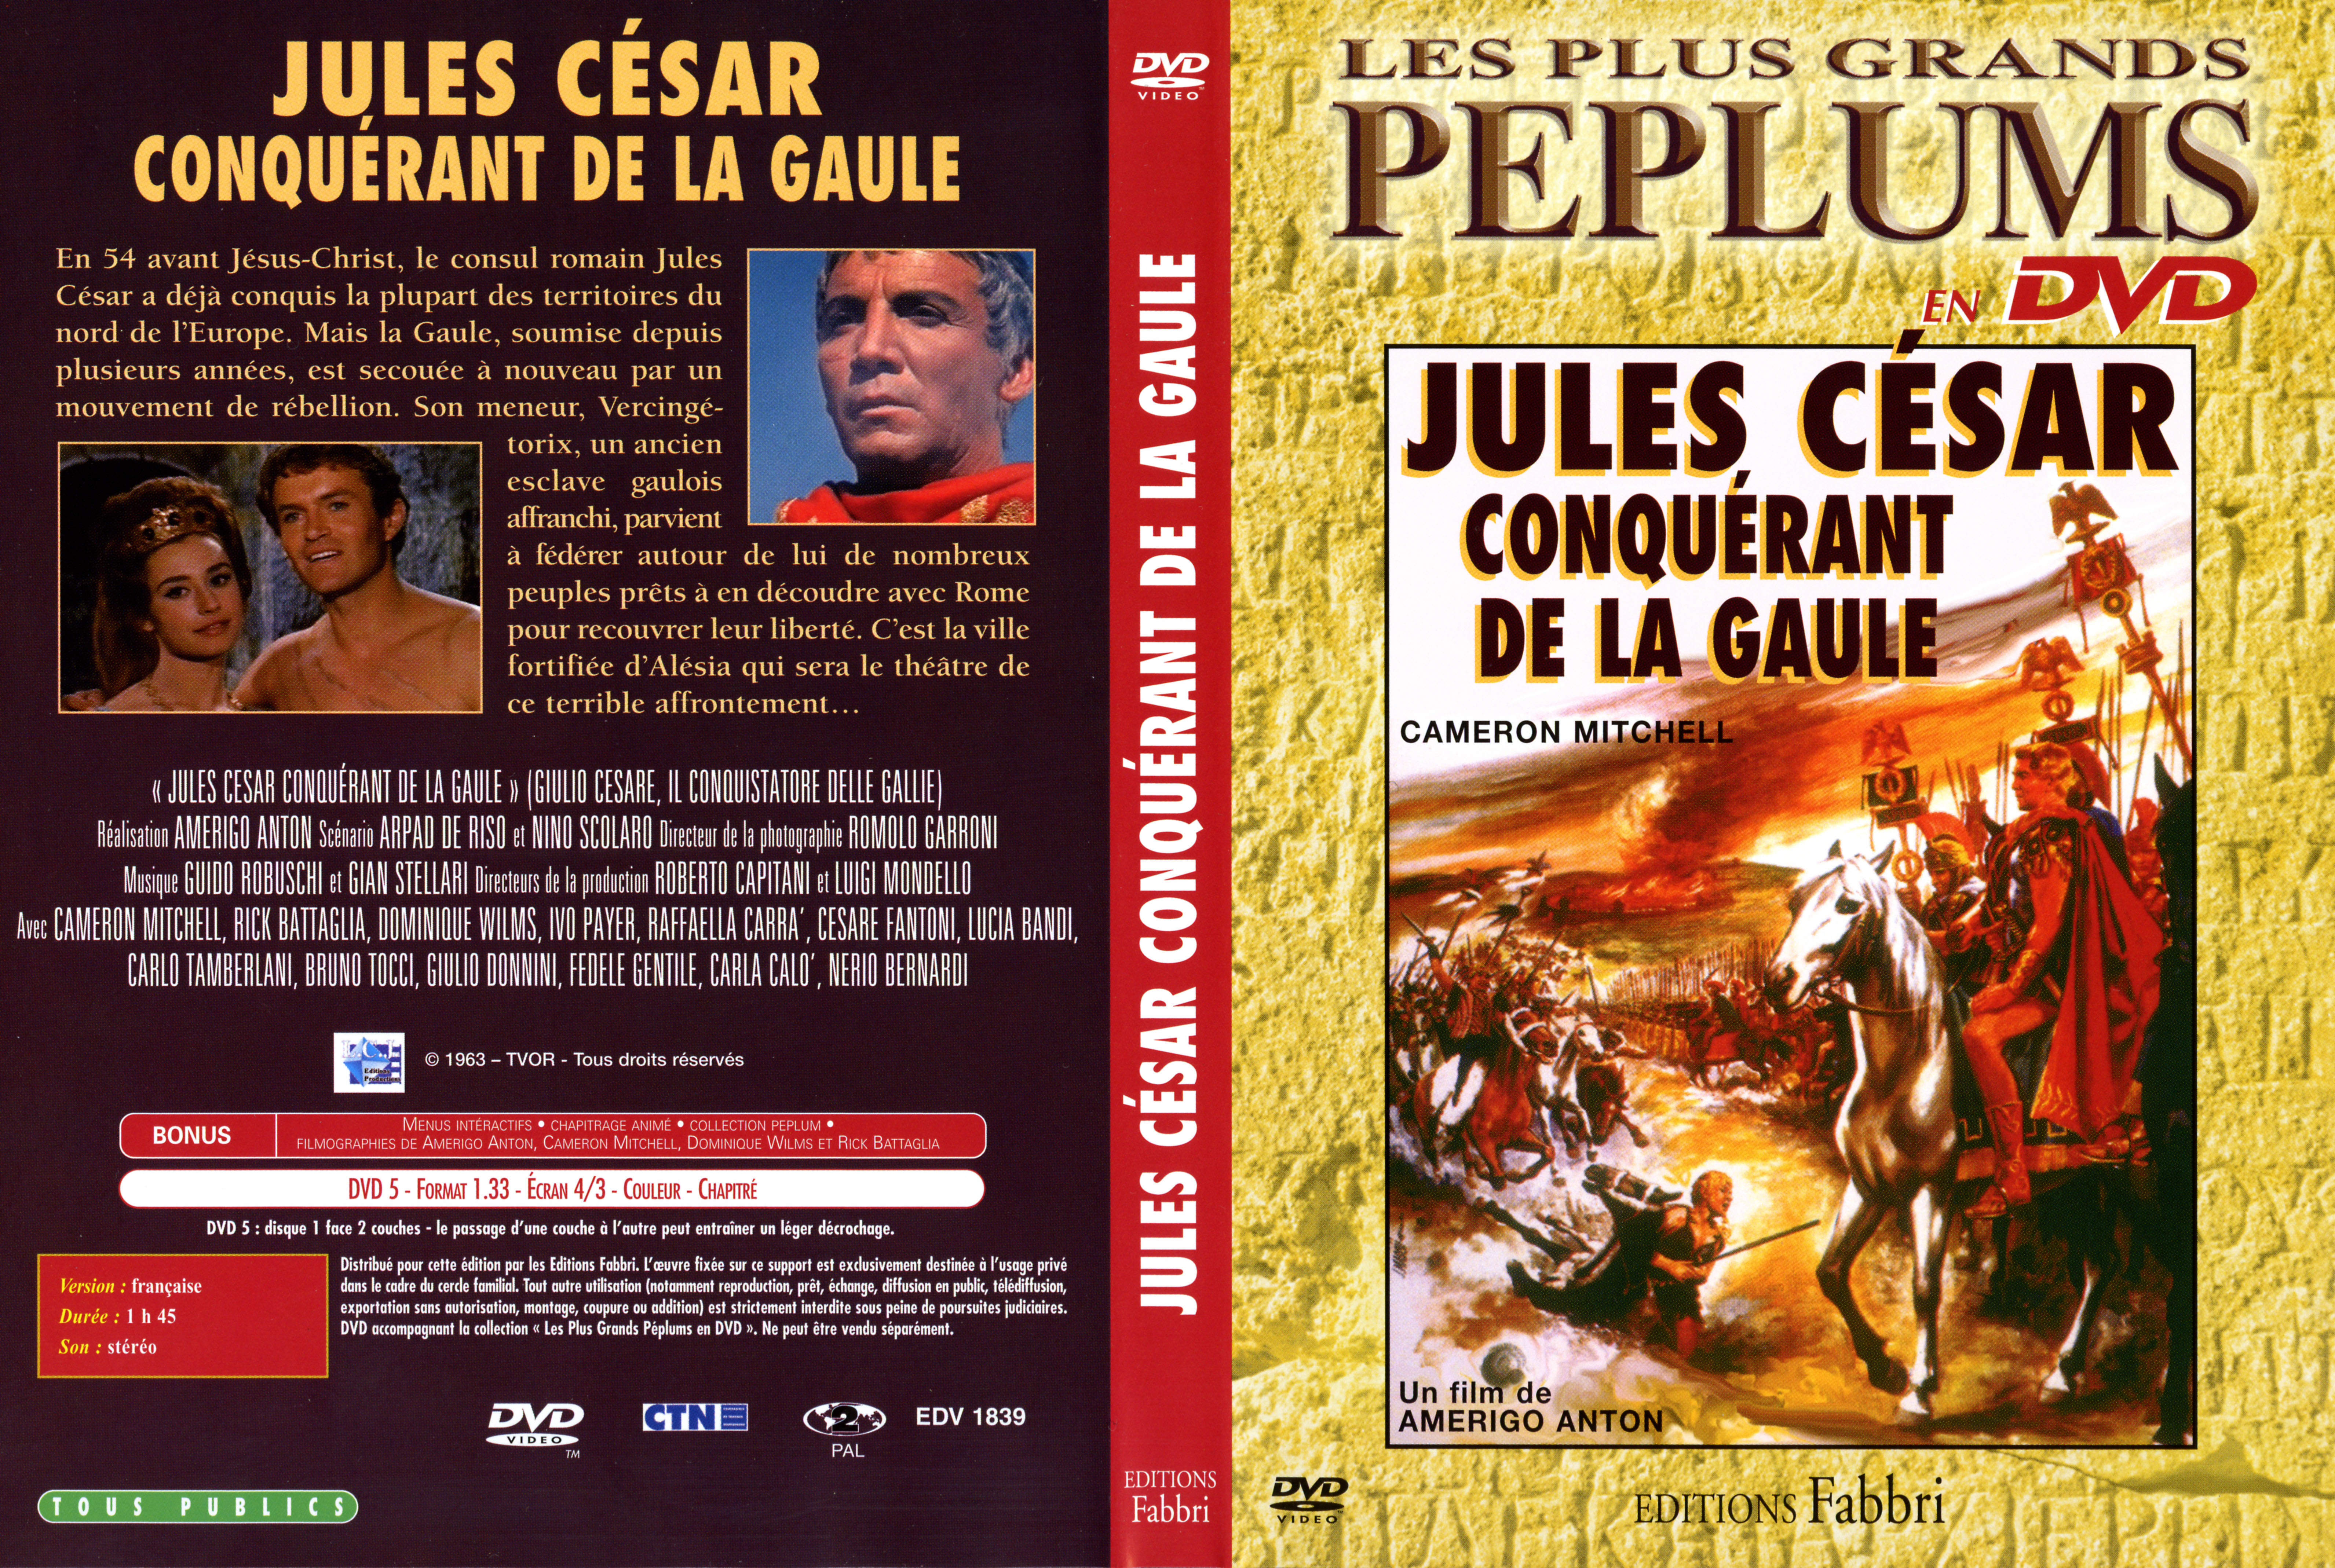 Jaquette DVD Jules Csar conqurant de la Gaule